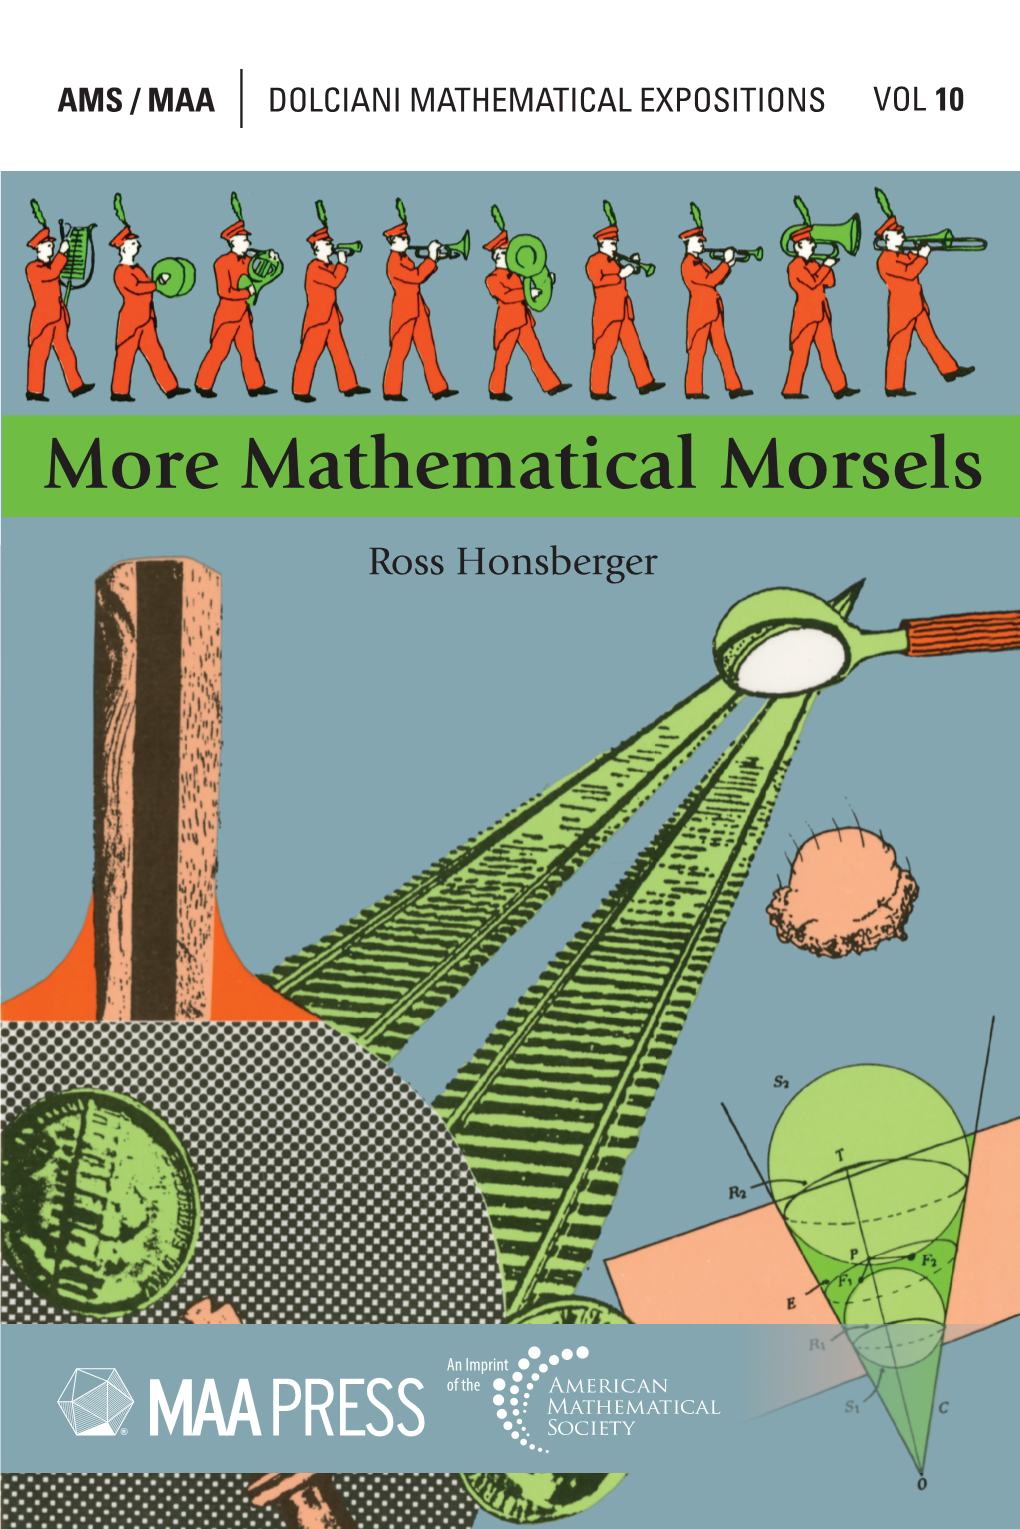 Mathematical Morsels Ross Honsberger :"10RE MATHEMATICAL MORSELS